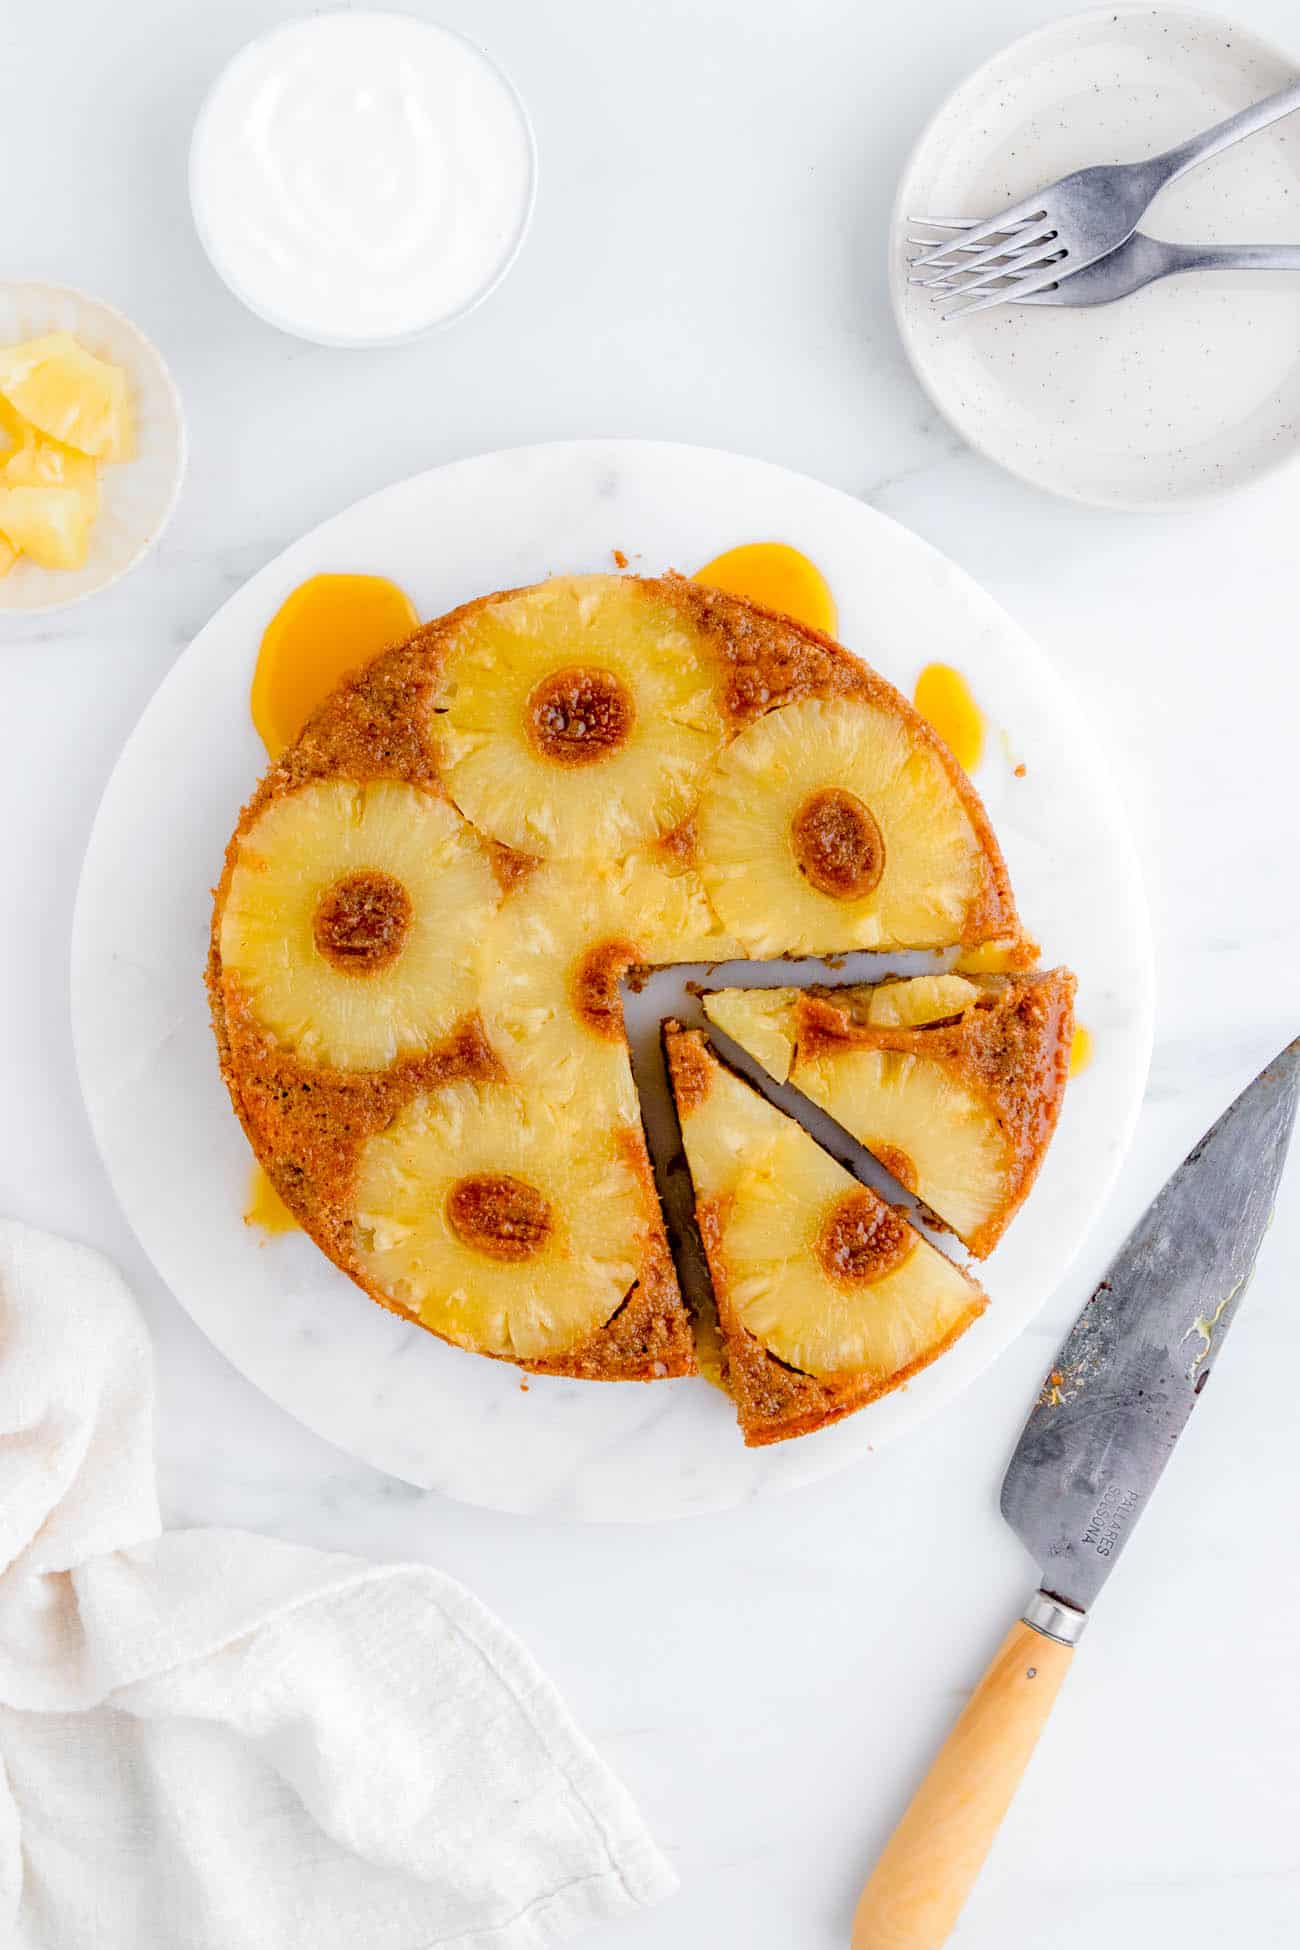 easy gluten free eggless vegan pineapple upside down cake recipe on a cake platter